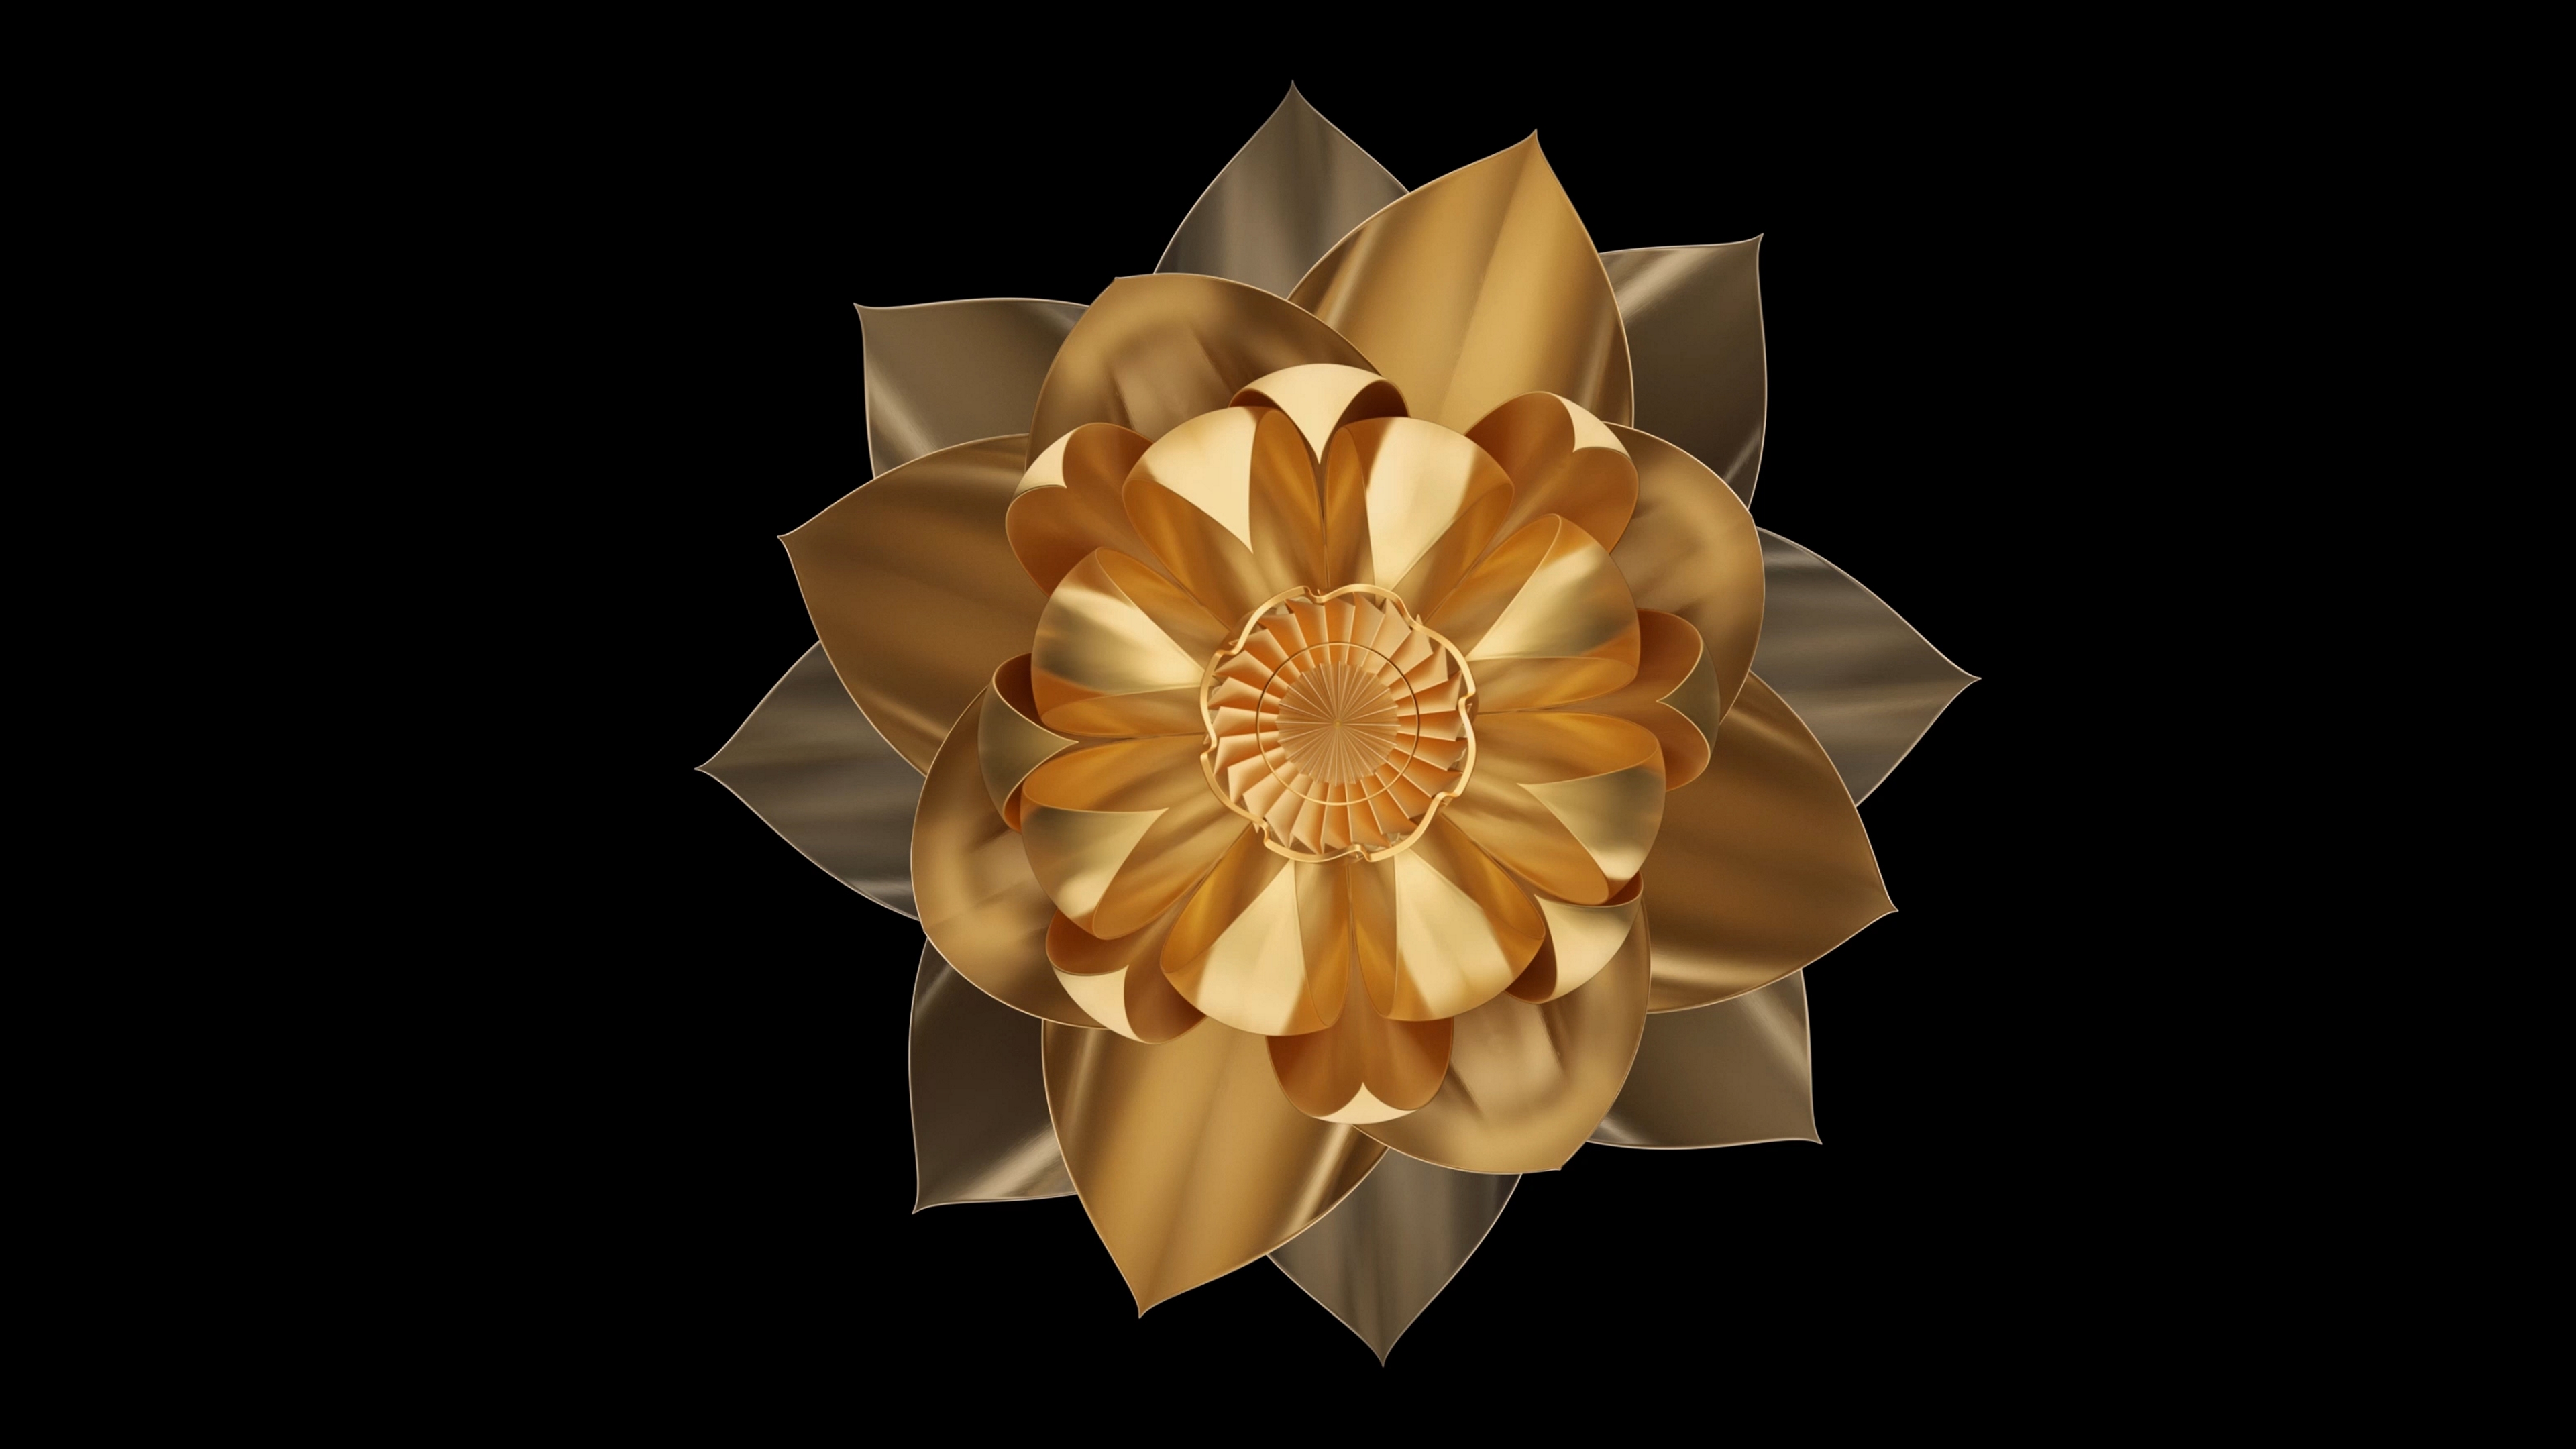 Digital image of a golden flower